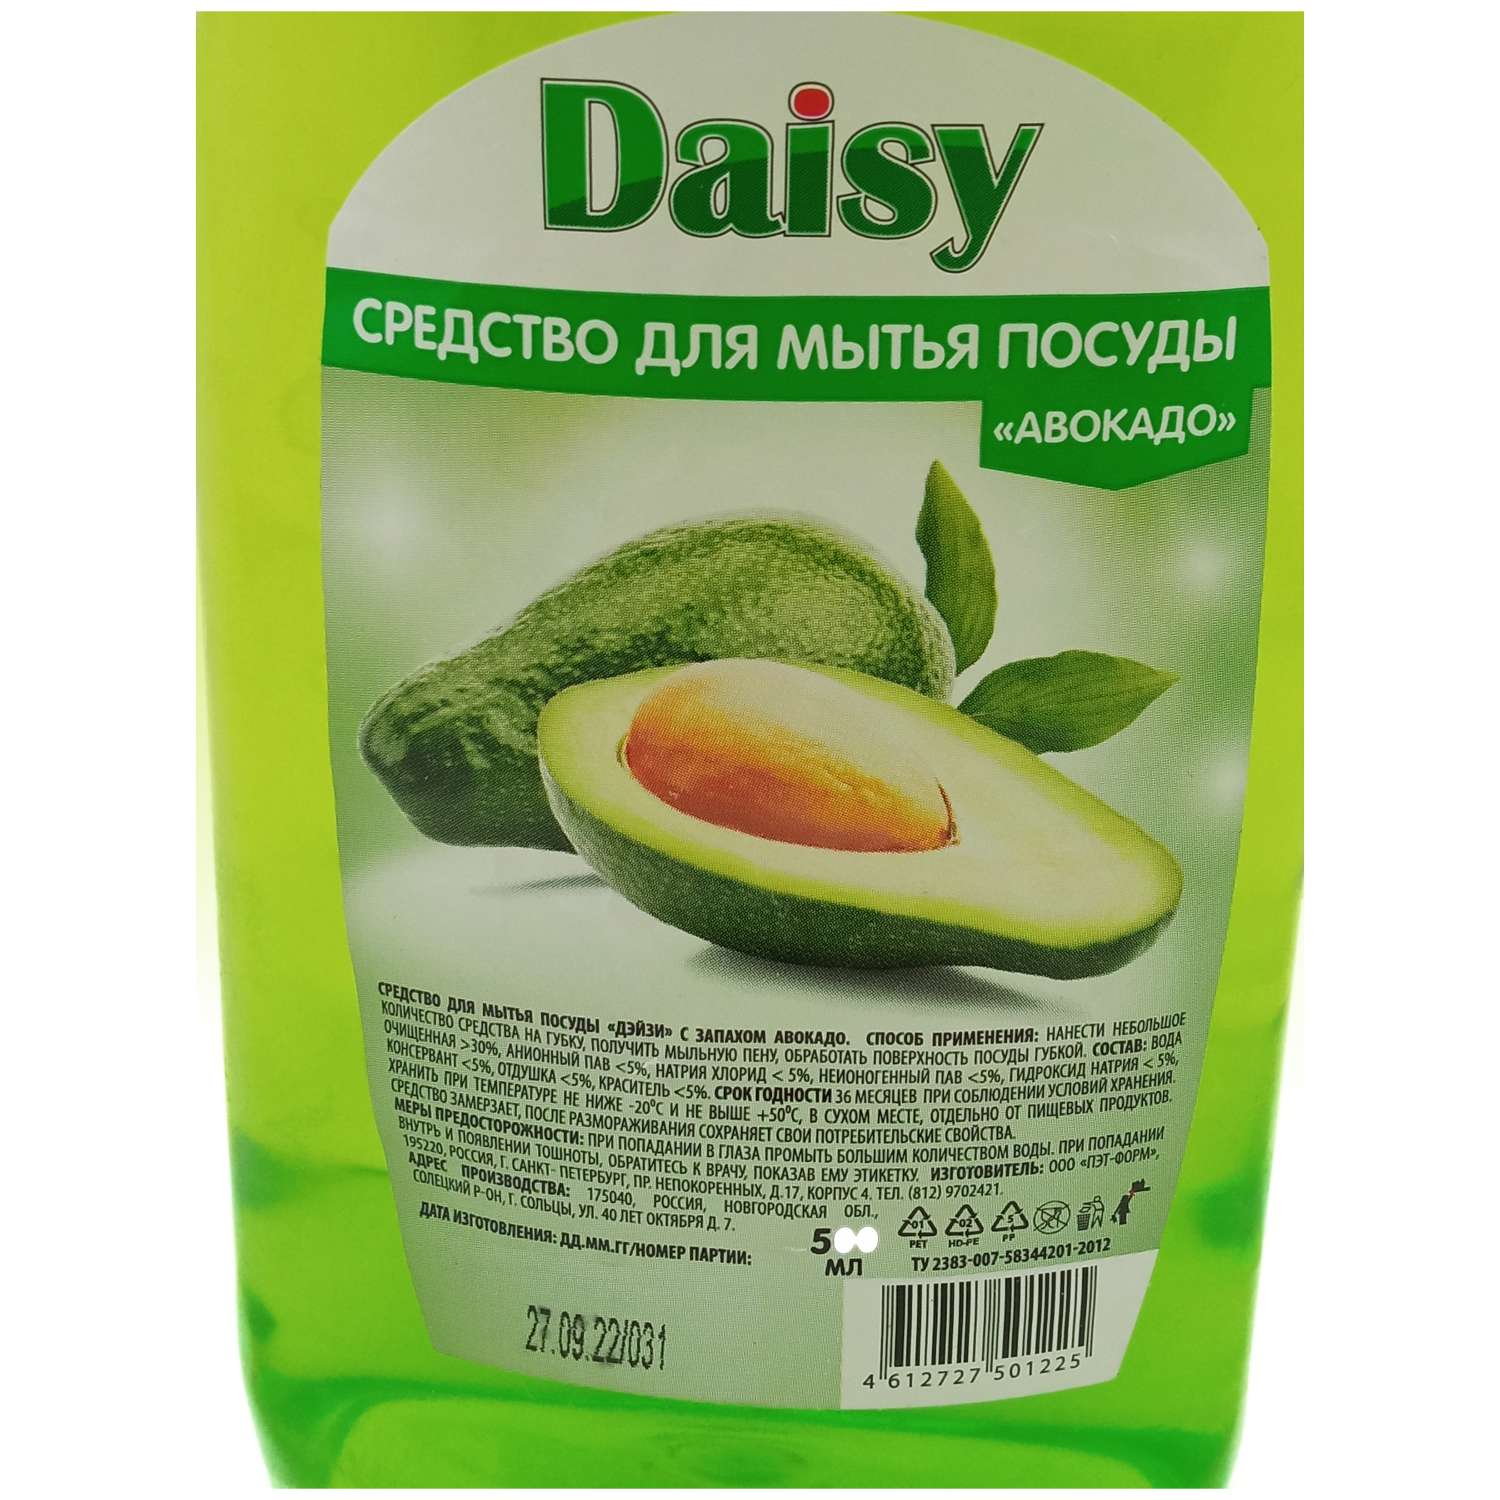 Средство для мытья посуды Daisy Эконом авокадо 0.5л - фото 4